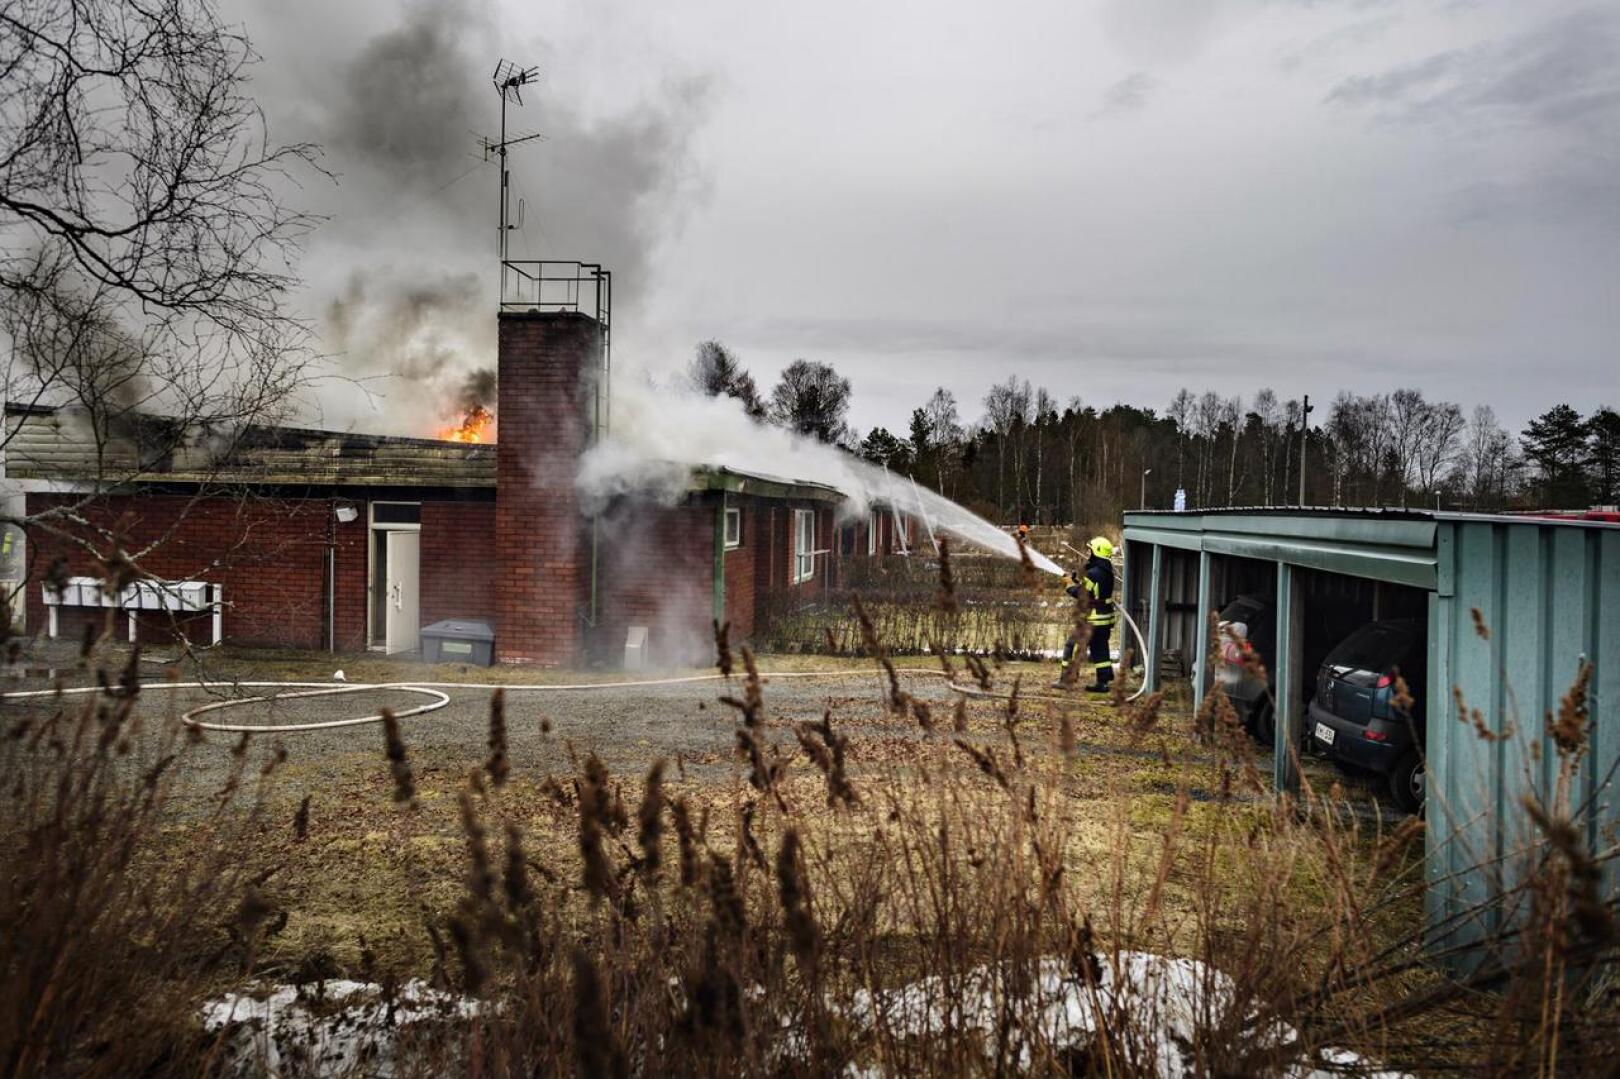 Kahdeksan asunnon rivitalo paloi Kälviän keskustassa Marttilan koulun ja Lucina Hagmanin koulun välittömässä läheisyydessä.

